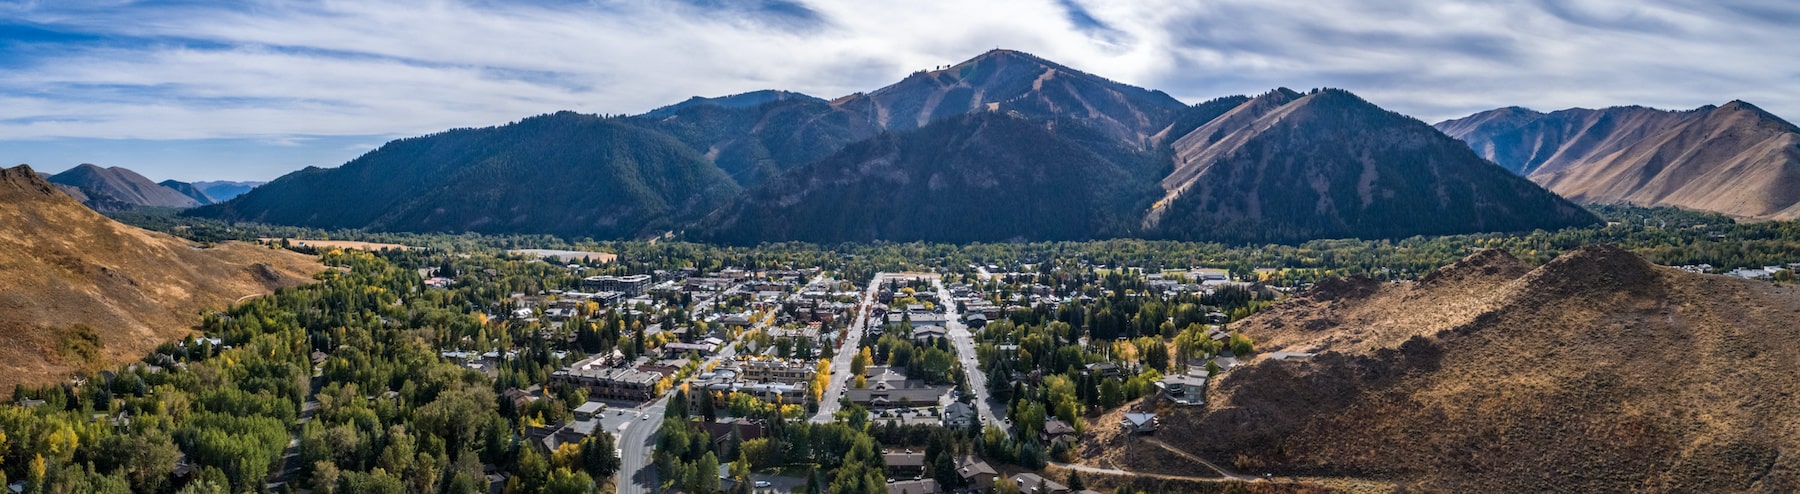 Scenic view of Idaho